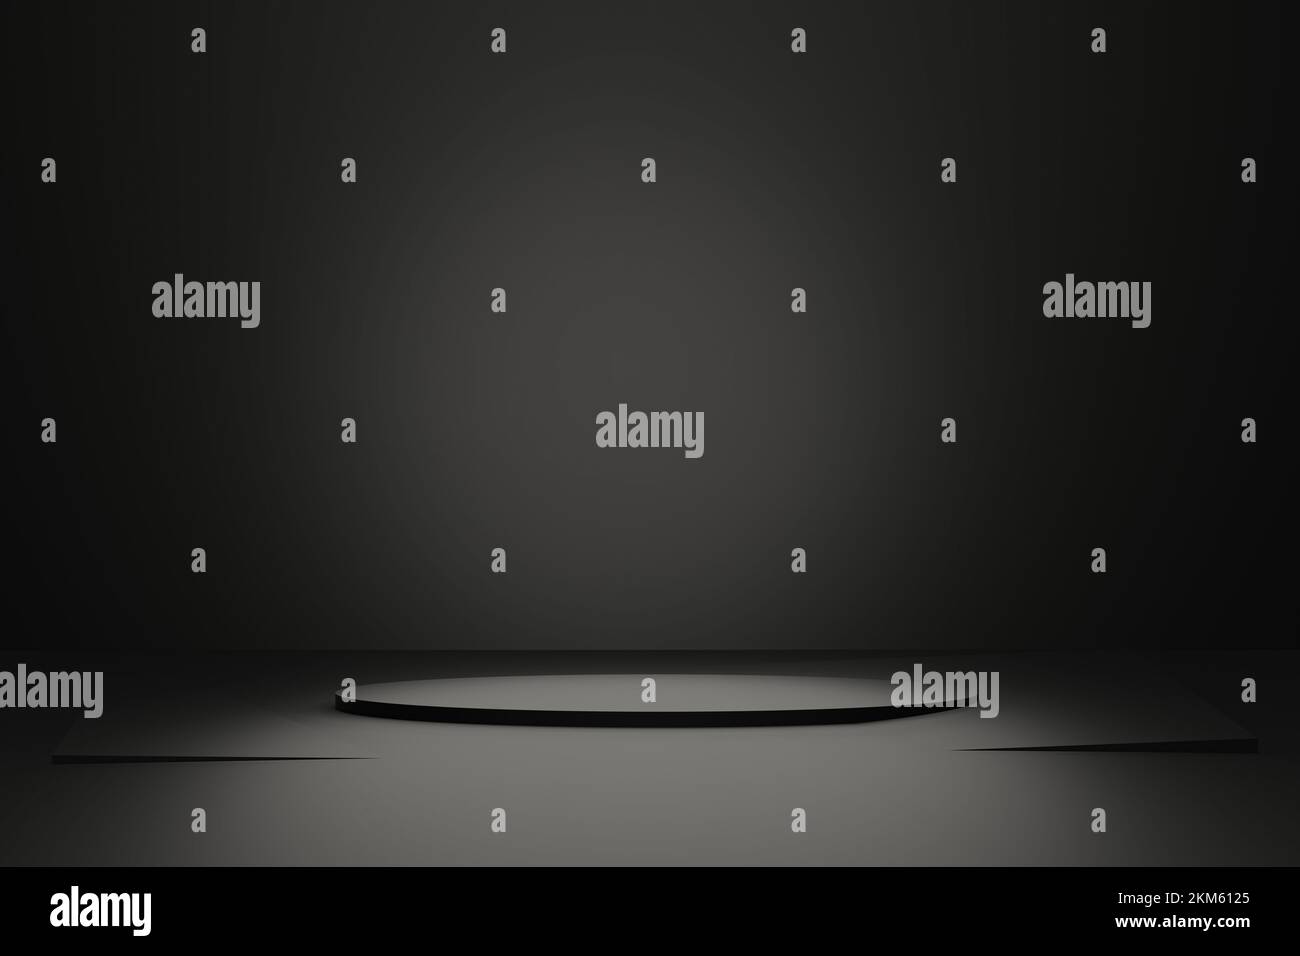 plate-forme noire podium dans le style de minimalisme pour les produits publicitaires, scène sur fond sombre rendu 3d. Banque D'Images